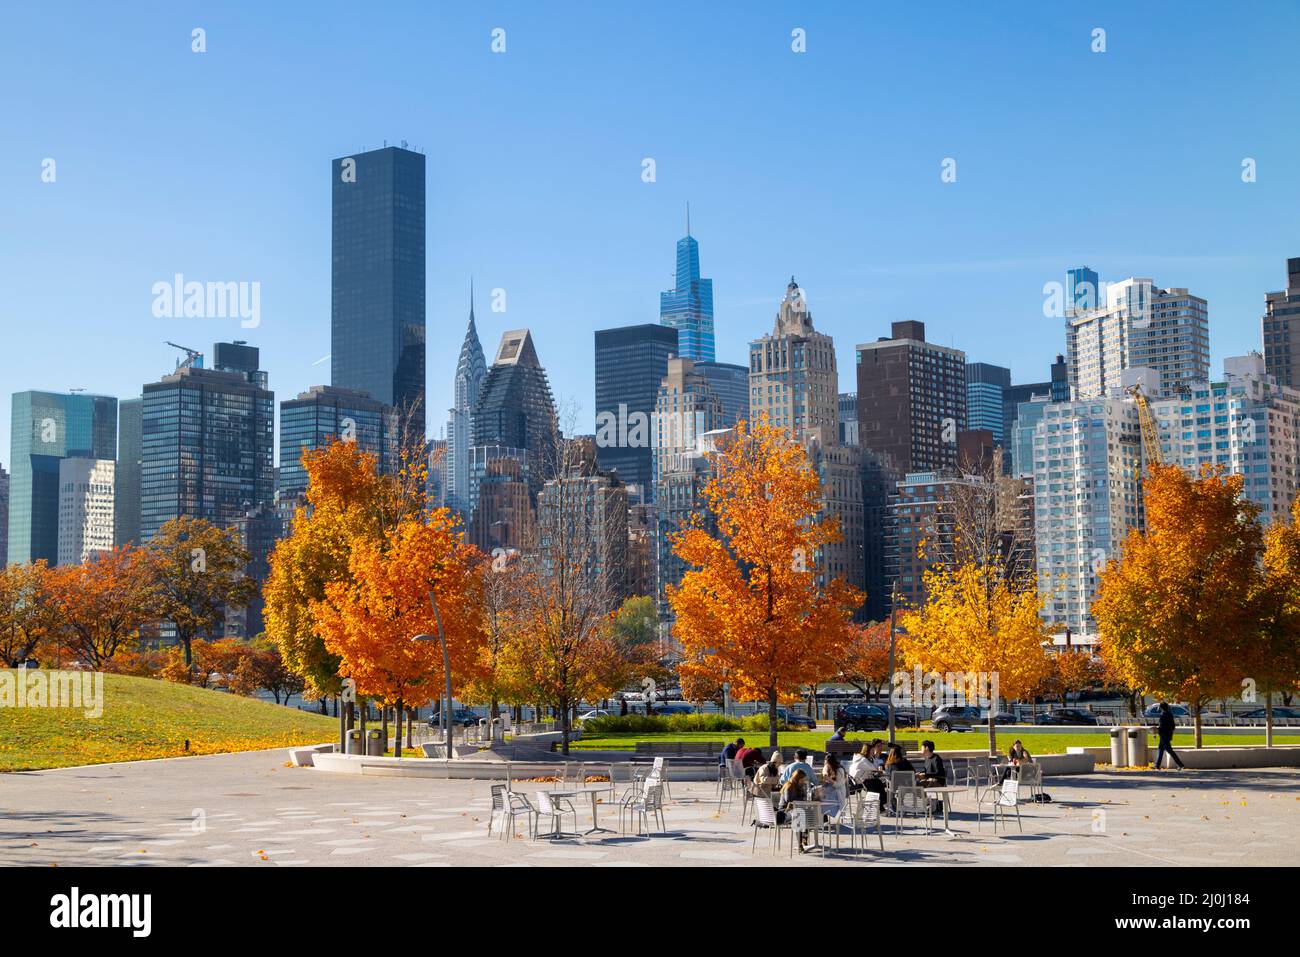 Am City View Point im Southpoint Park Roosevelt Island leuchten am 2021. November in New York City Bäume in Herbstfarben. Midtown Manhattan Wolkenkratzer st Stockfoto